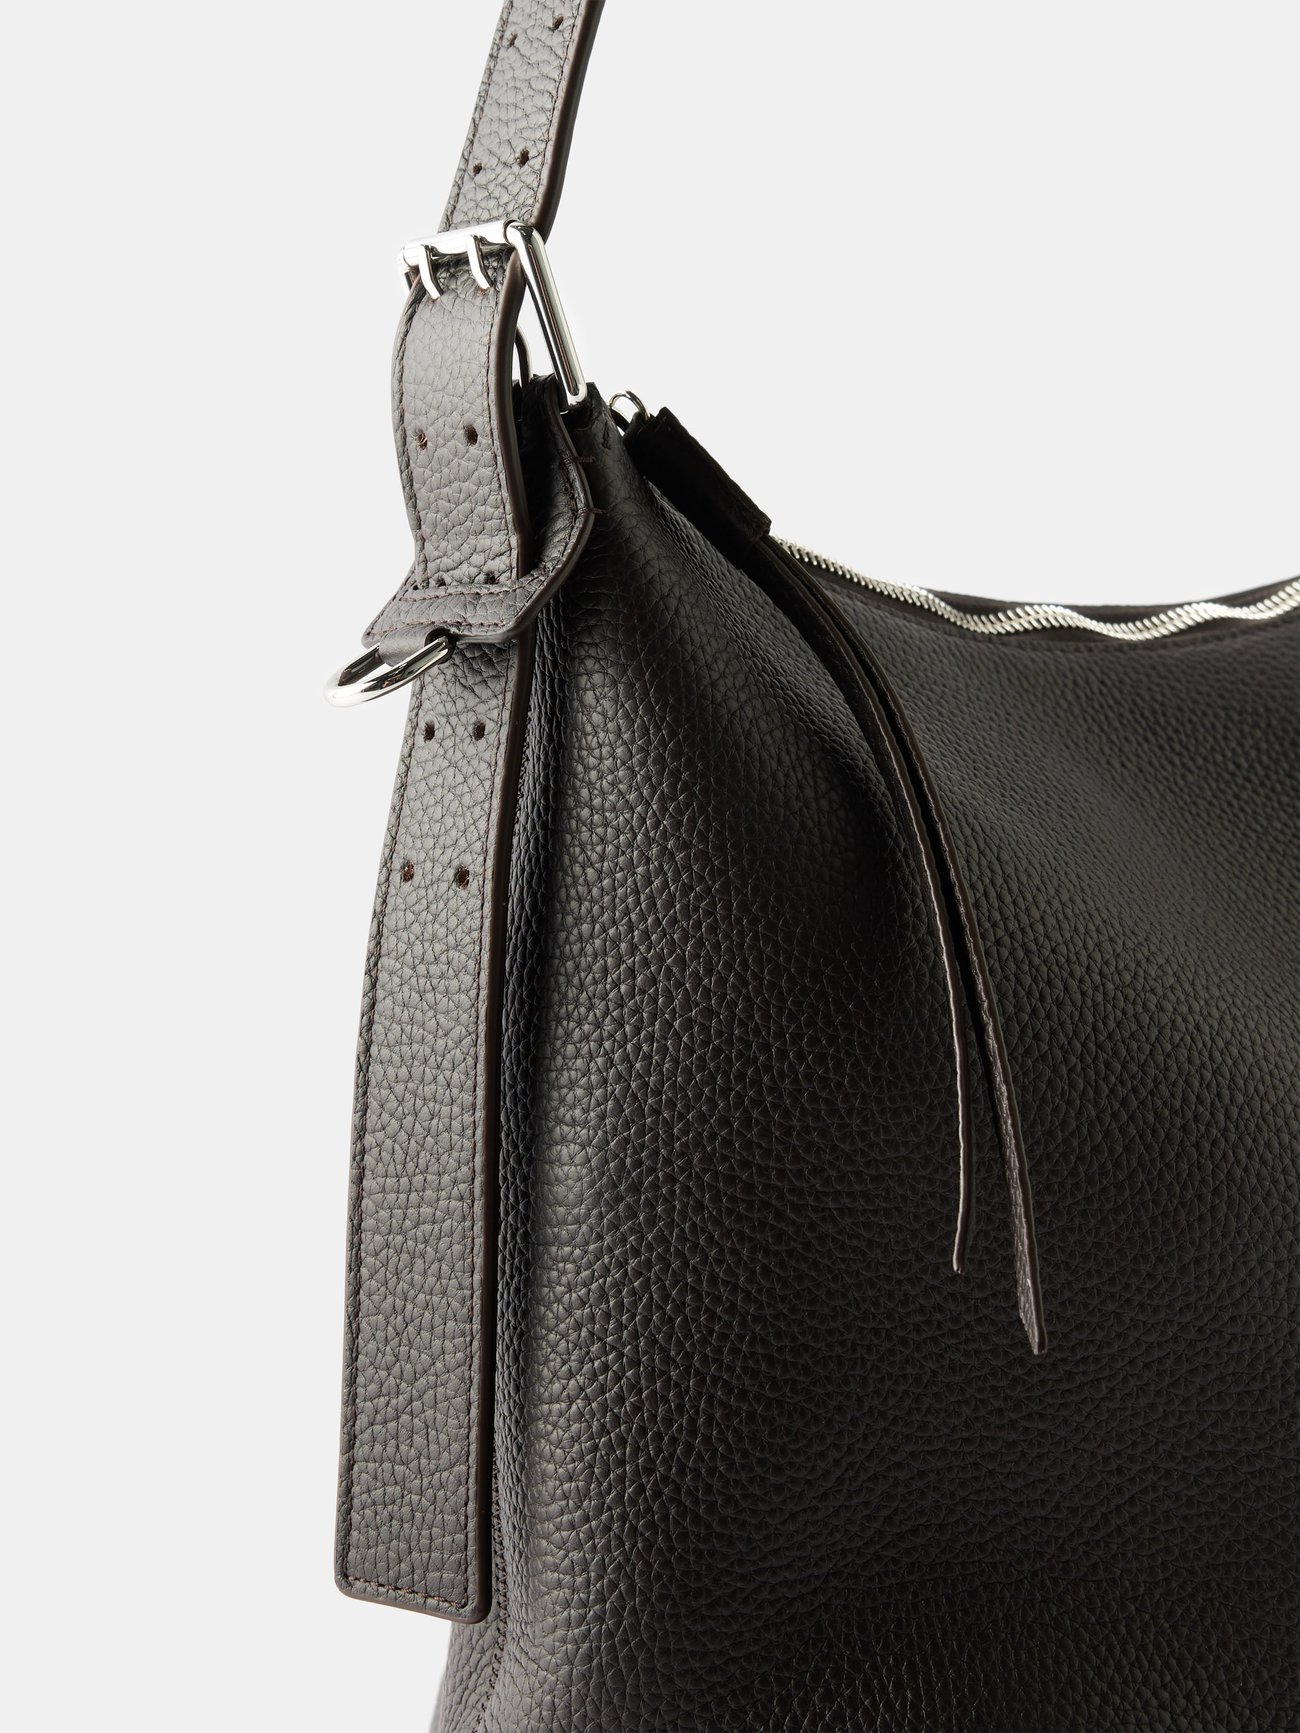 Lemaire Belt Leather Shoulder Bag in Natural